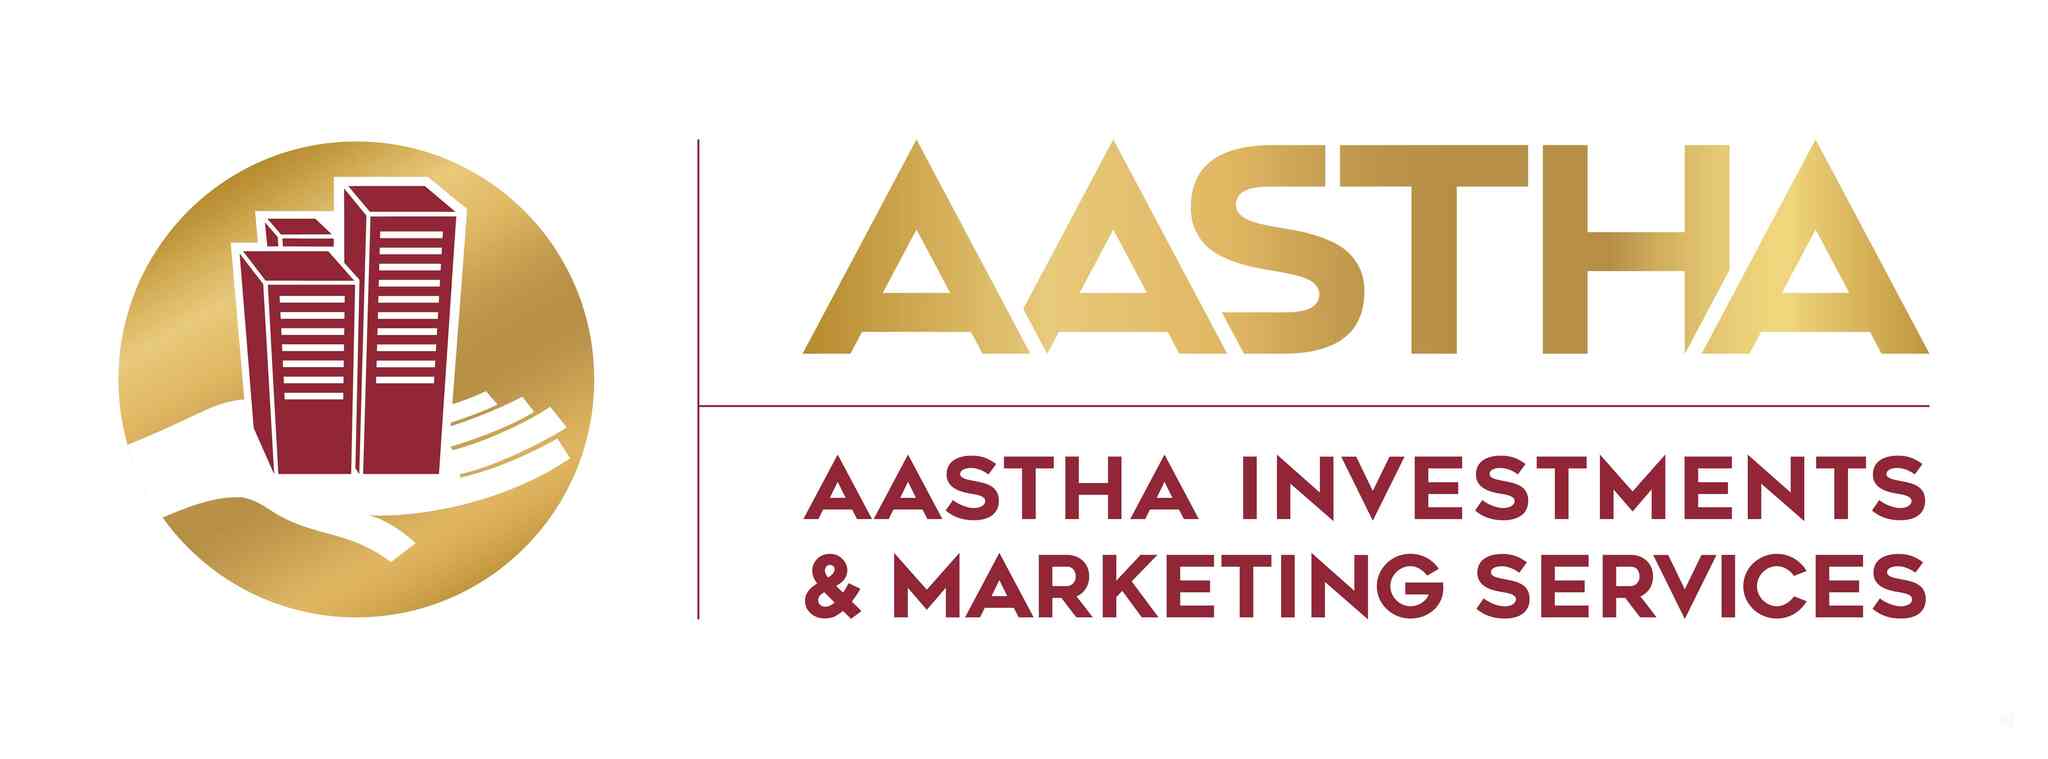 aastha-logo